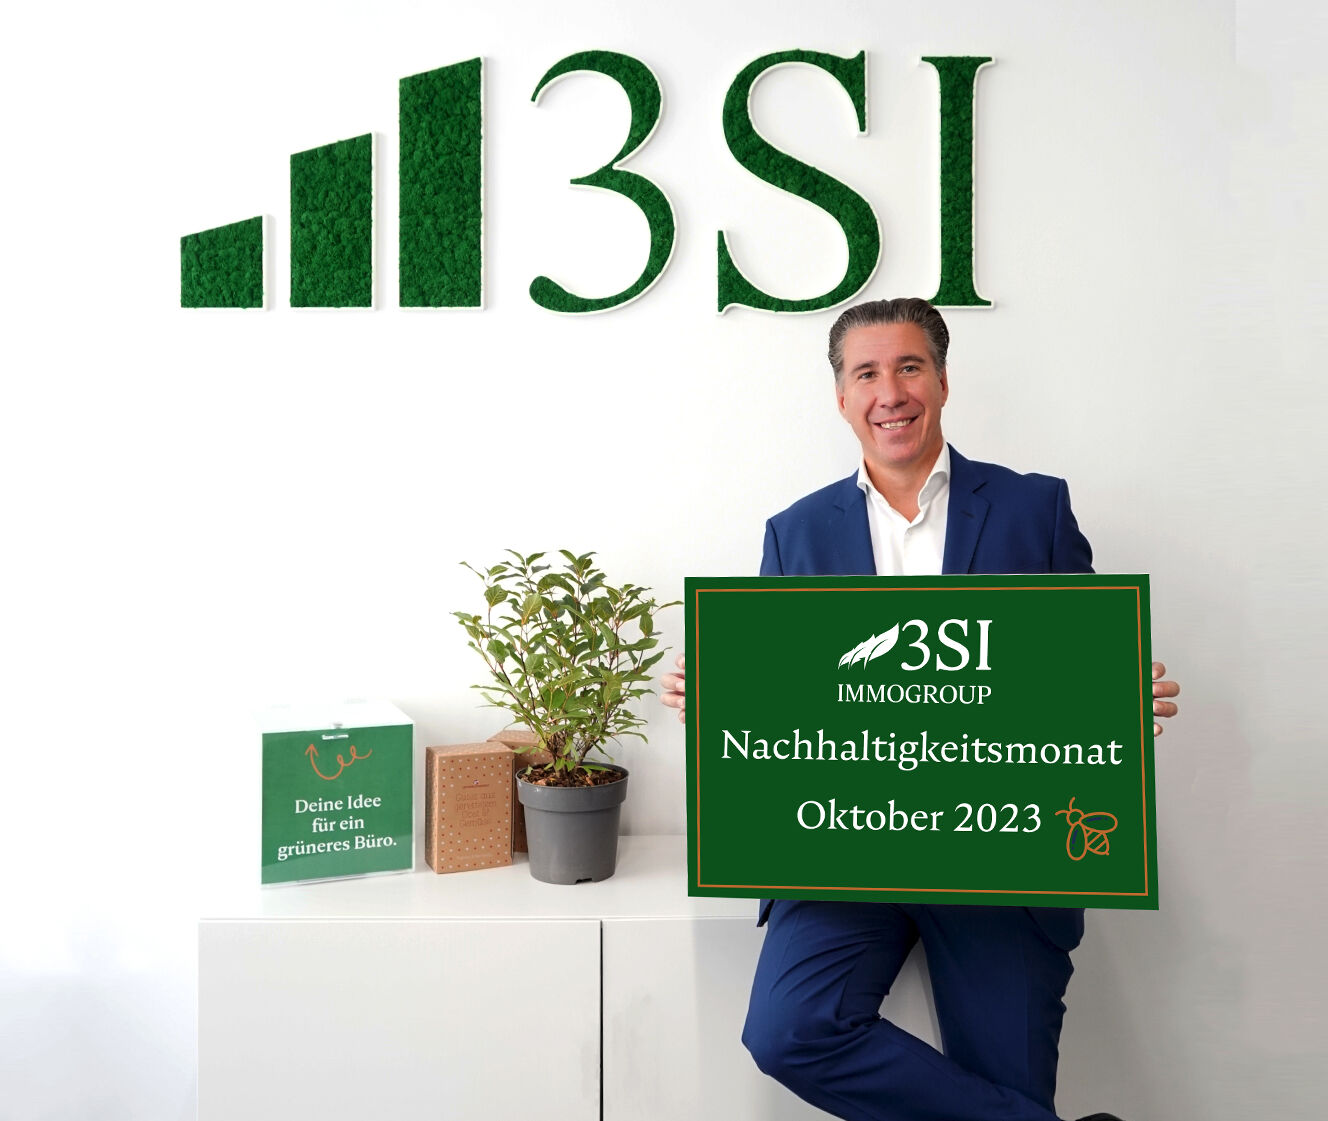 Ein ganzes Monat lang rückt der Immobilienentwickler 3SI Immogroup und Geschäftsführer Michael Schmidt das Thema Nachhaltigkeit ins Zentrum.